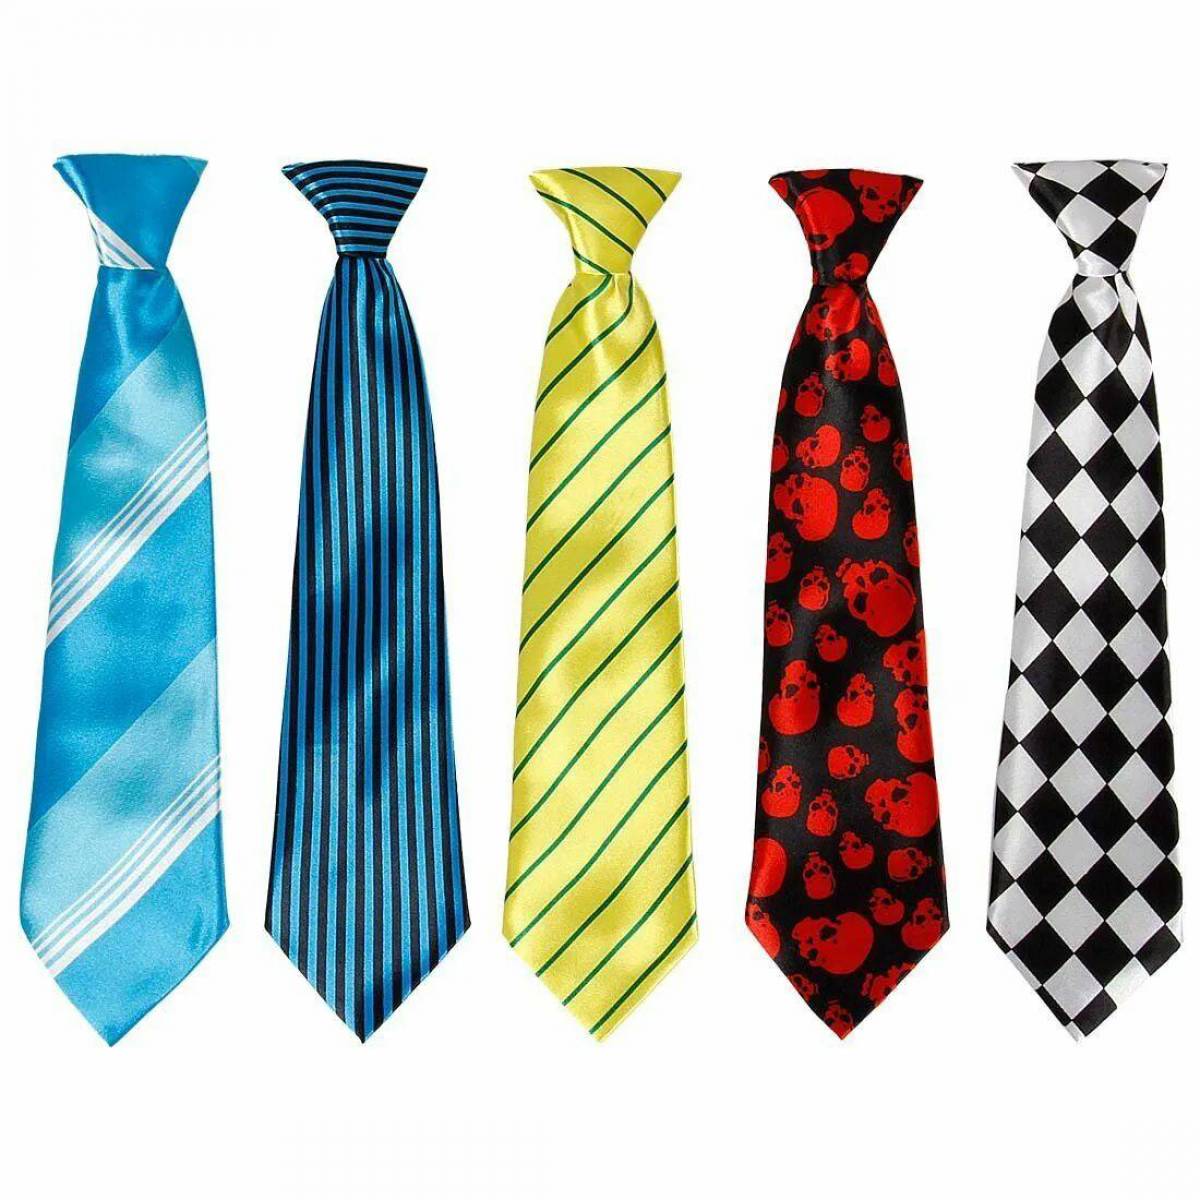 Картинка галстук мужской. Галстук. Разноцветный галстук. Галстук мультяшный. Галстук для детей.